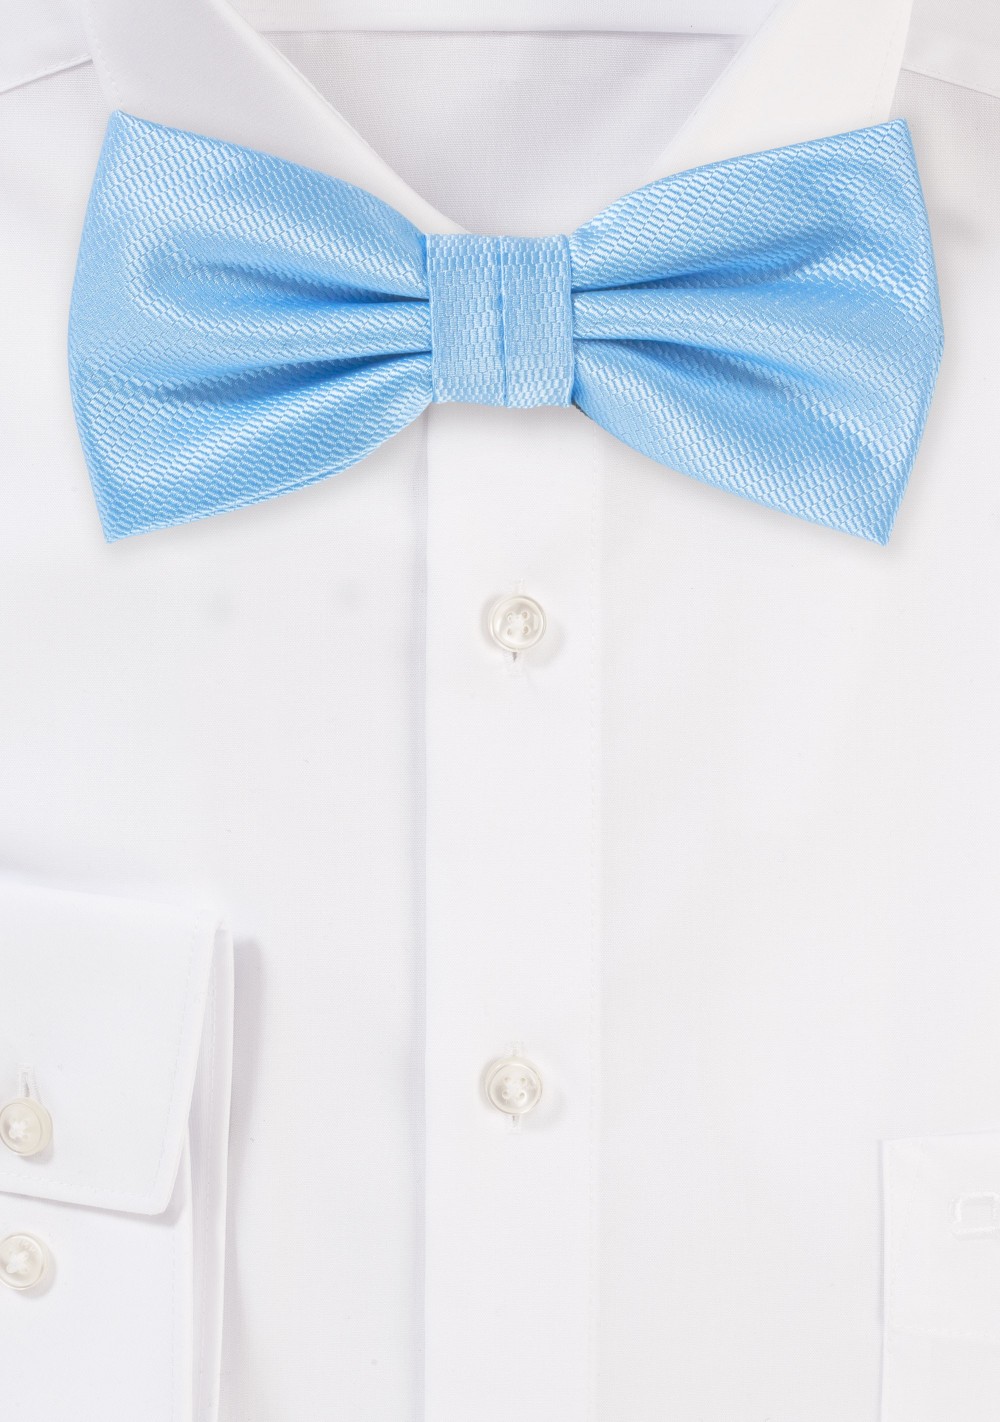 Elegant Summer Bow Tie in Capri Blue